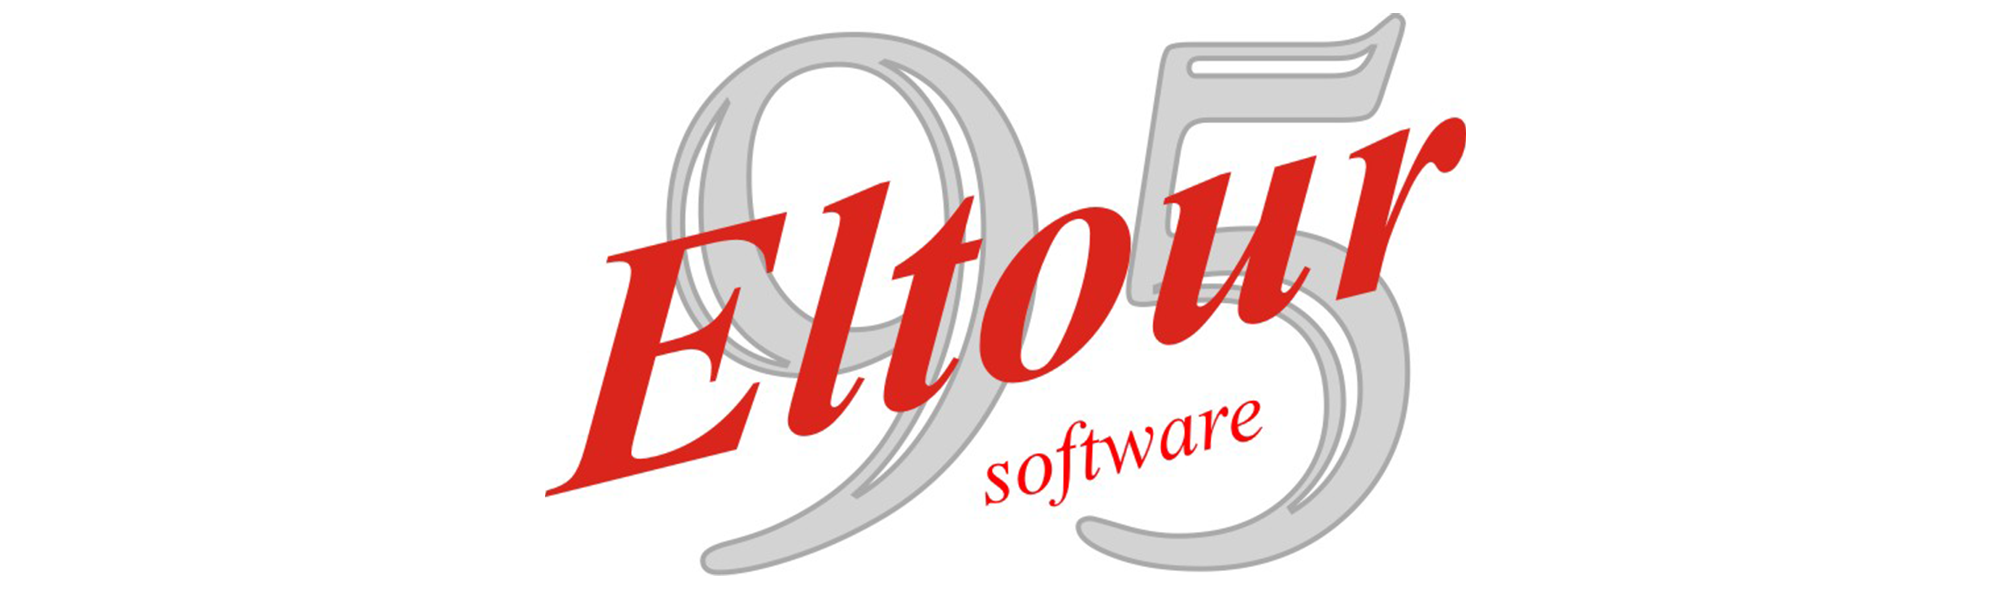 Logo_Eltour95_2000x596